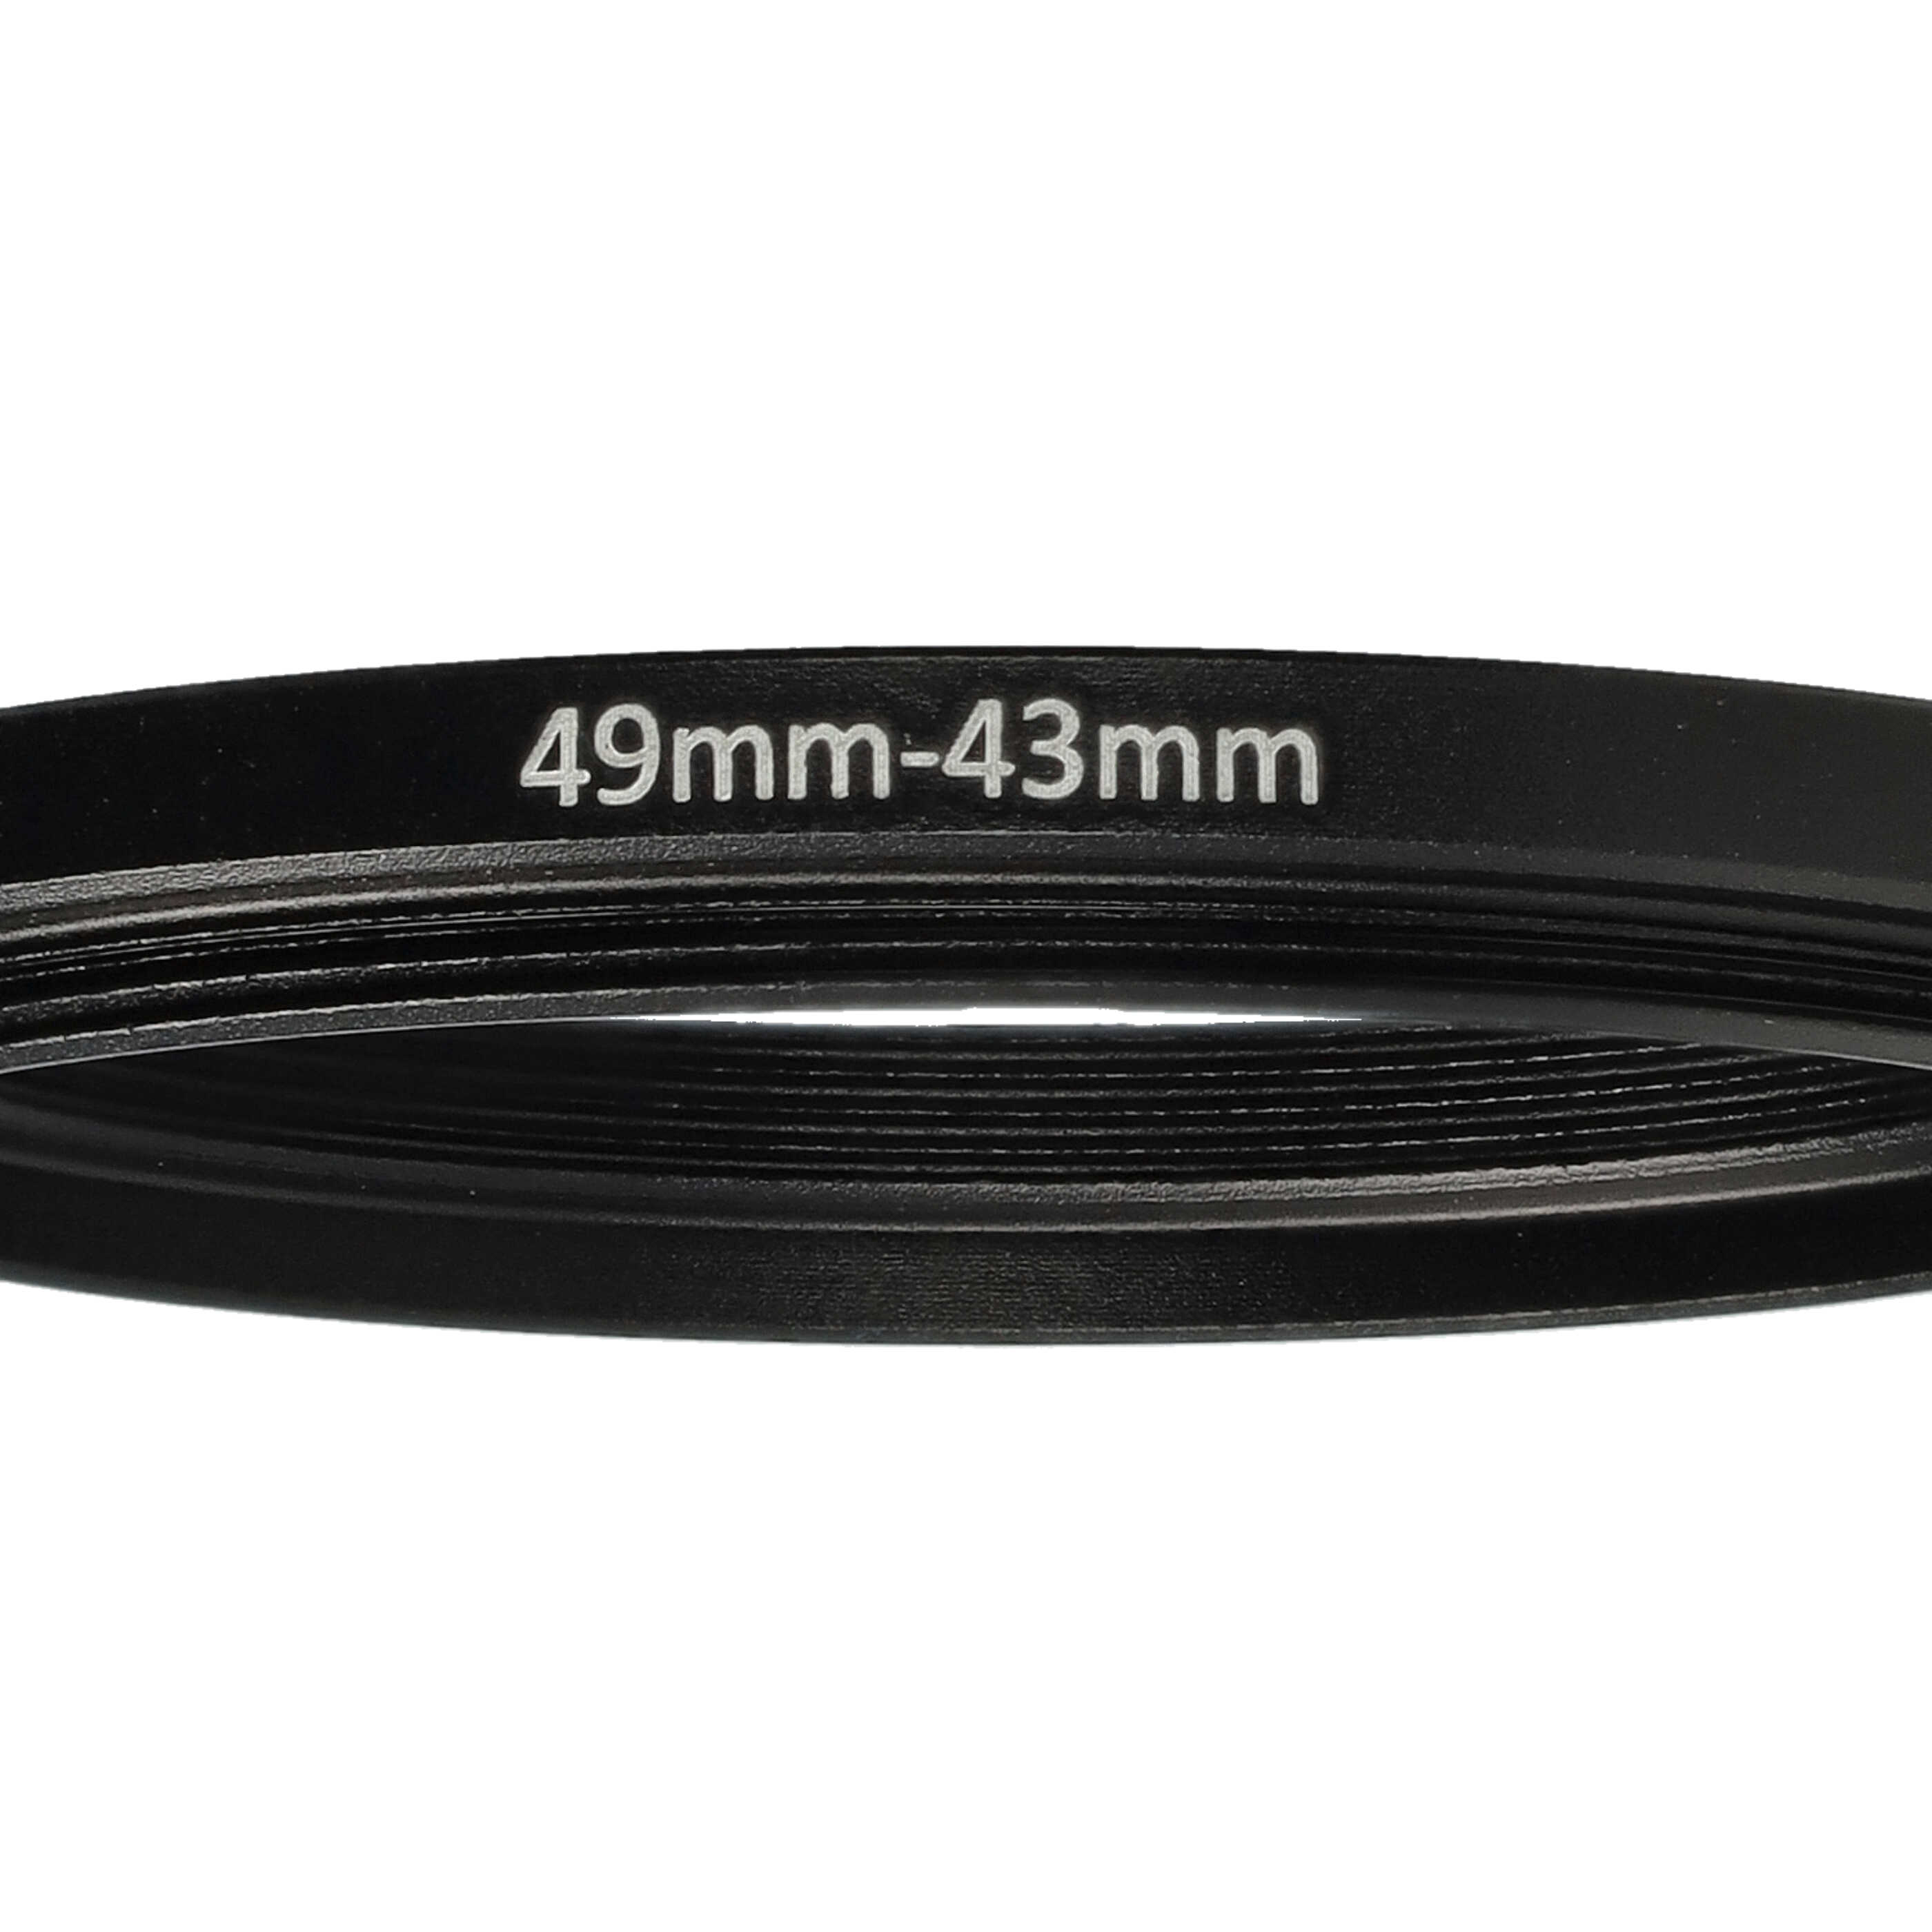 Redukcja filtrowa adapter Step-Down 49 mm - 43 mm pasująca do obiektywu - metal, czarny